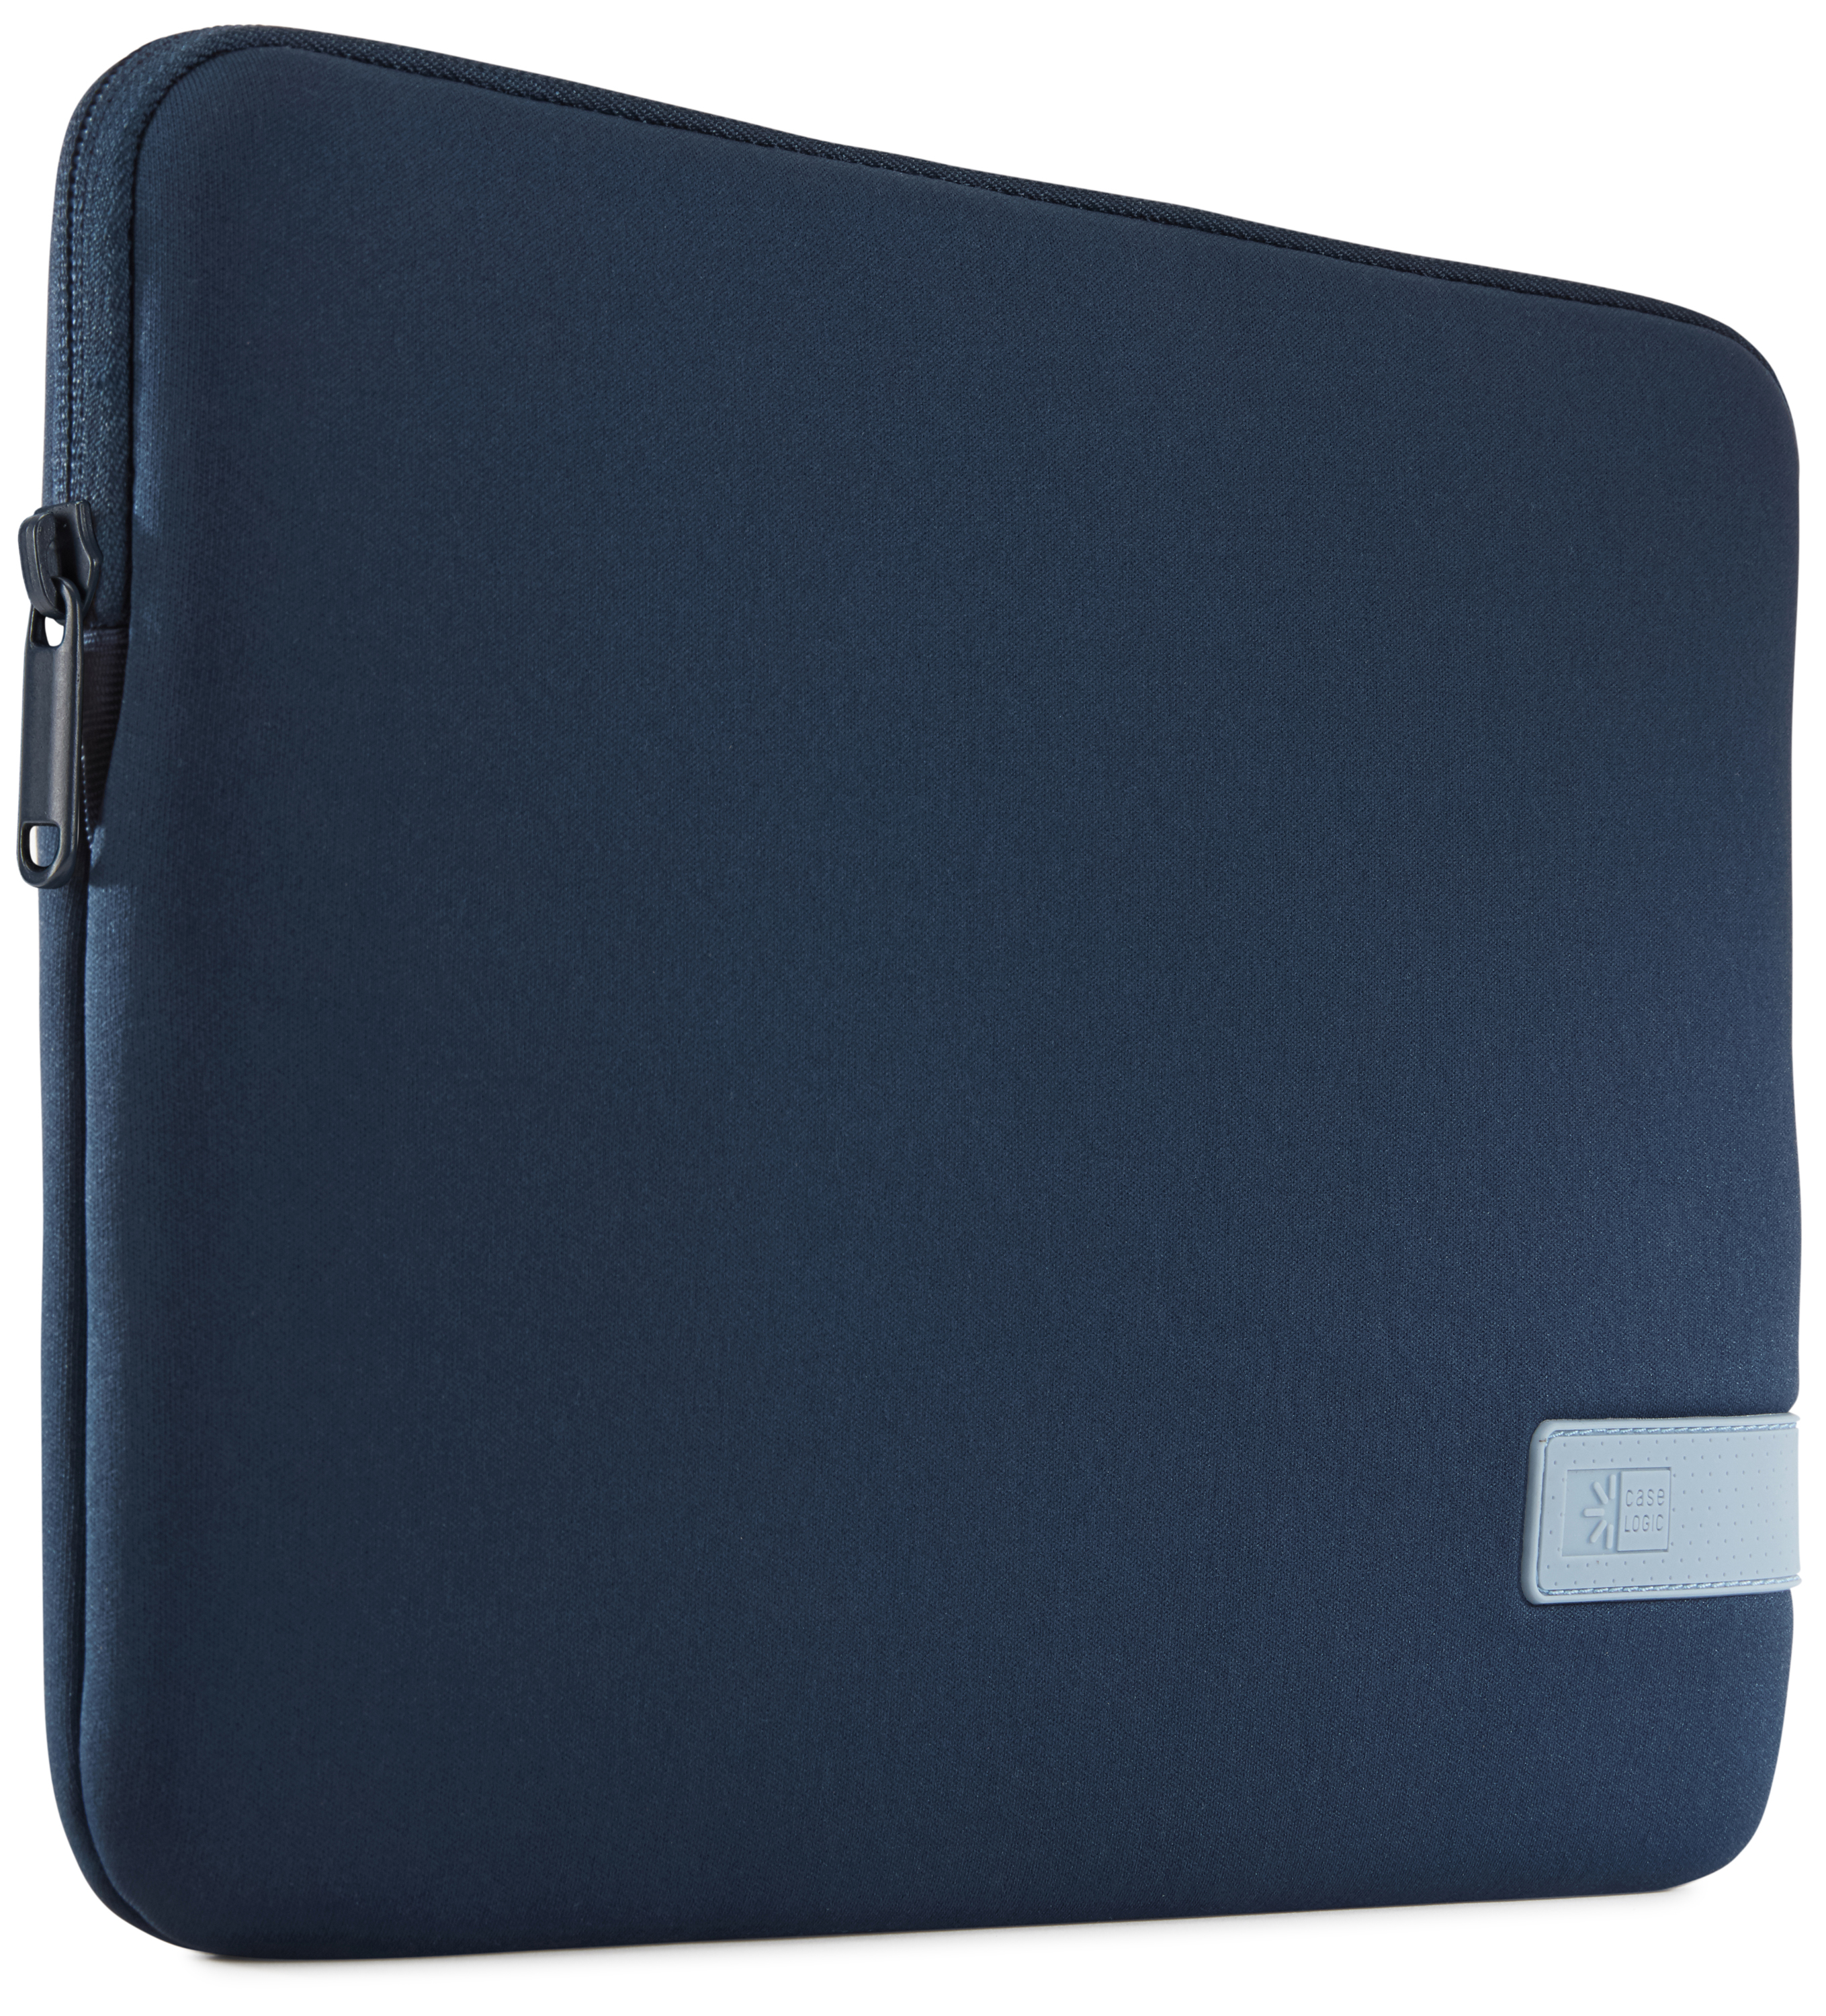 حقيبة كيس لوجيك ريفليكت سليف لون أزرق داكن لجهاز ماك بوك بمقاس 13 بوصة